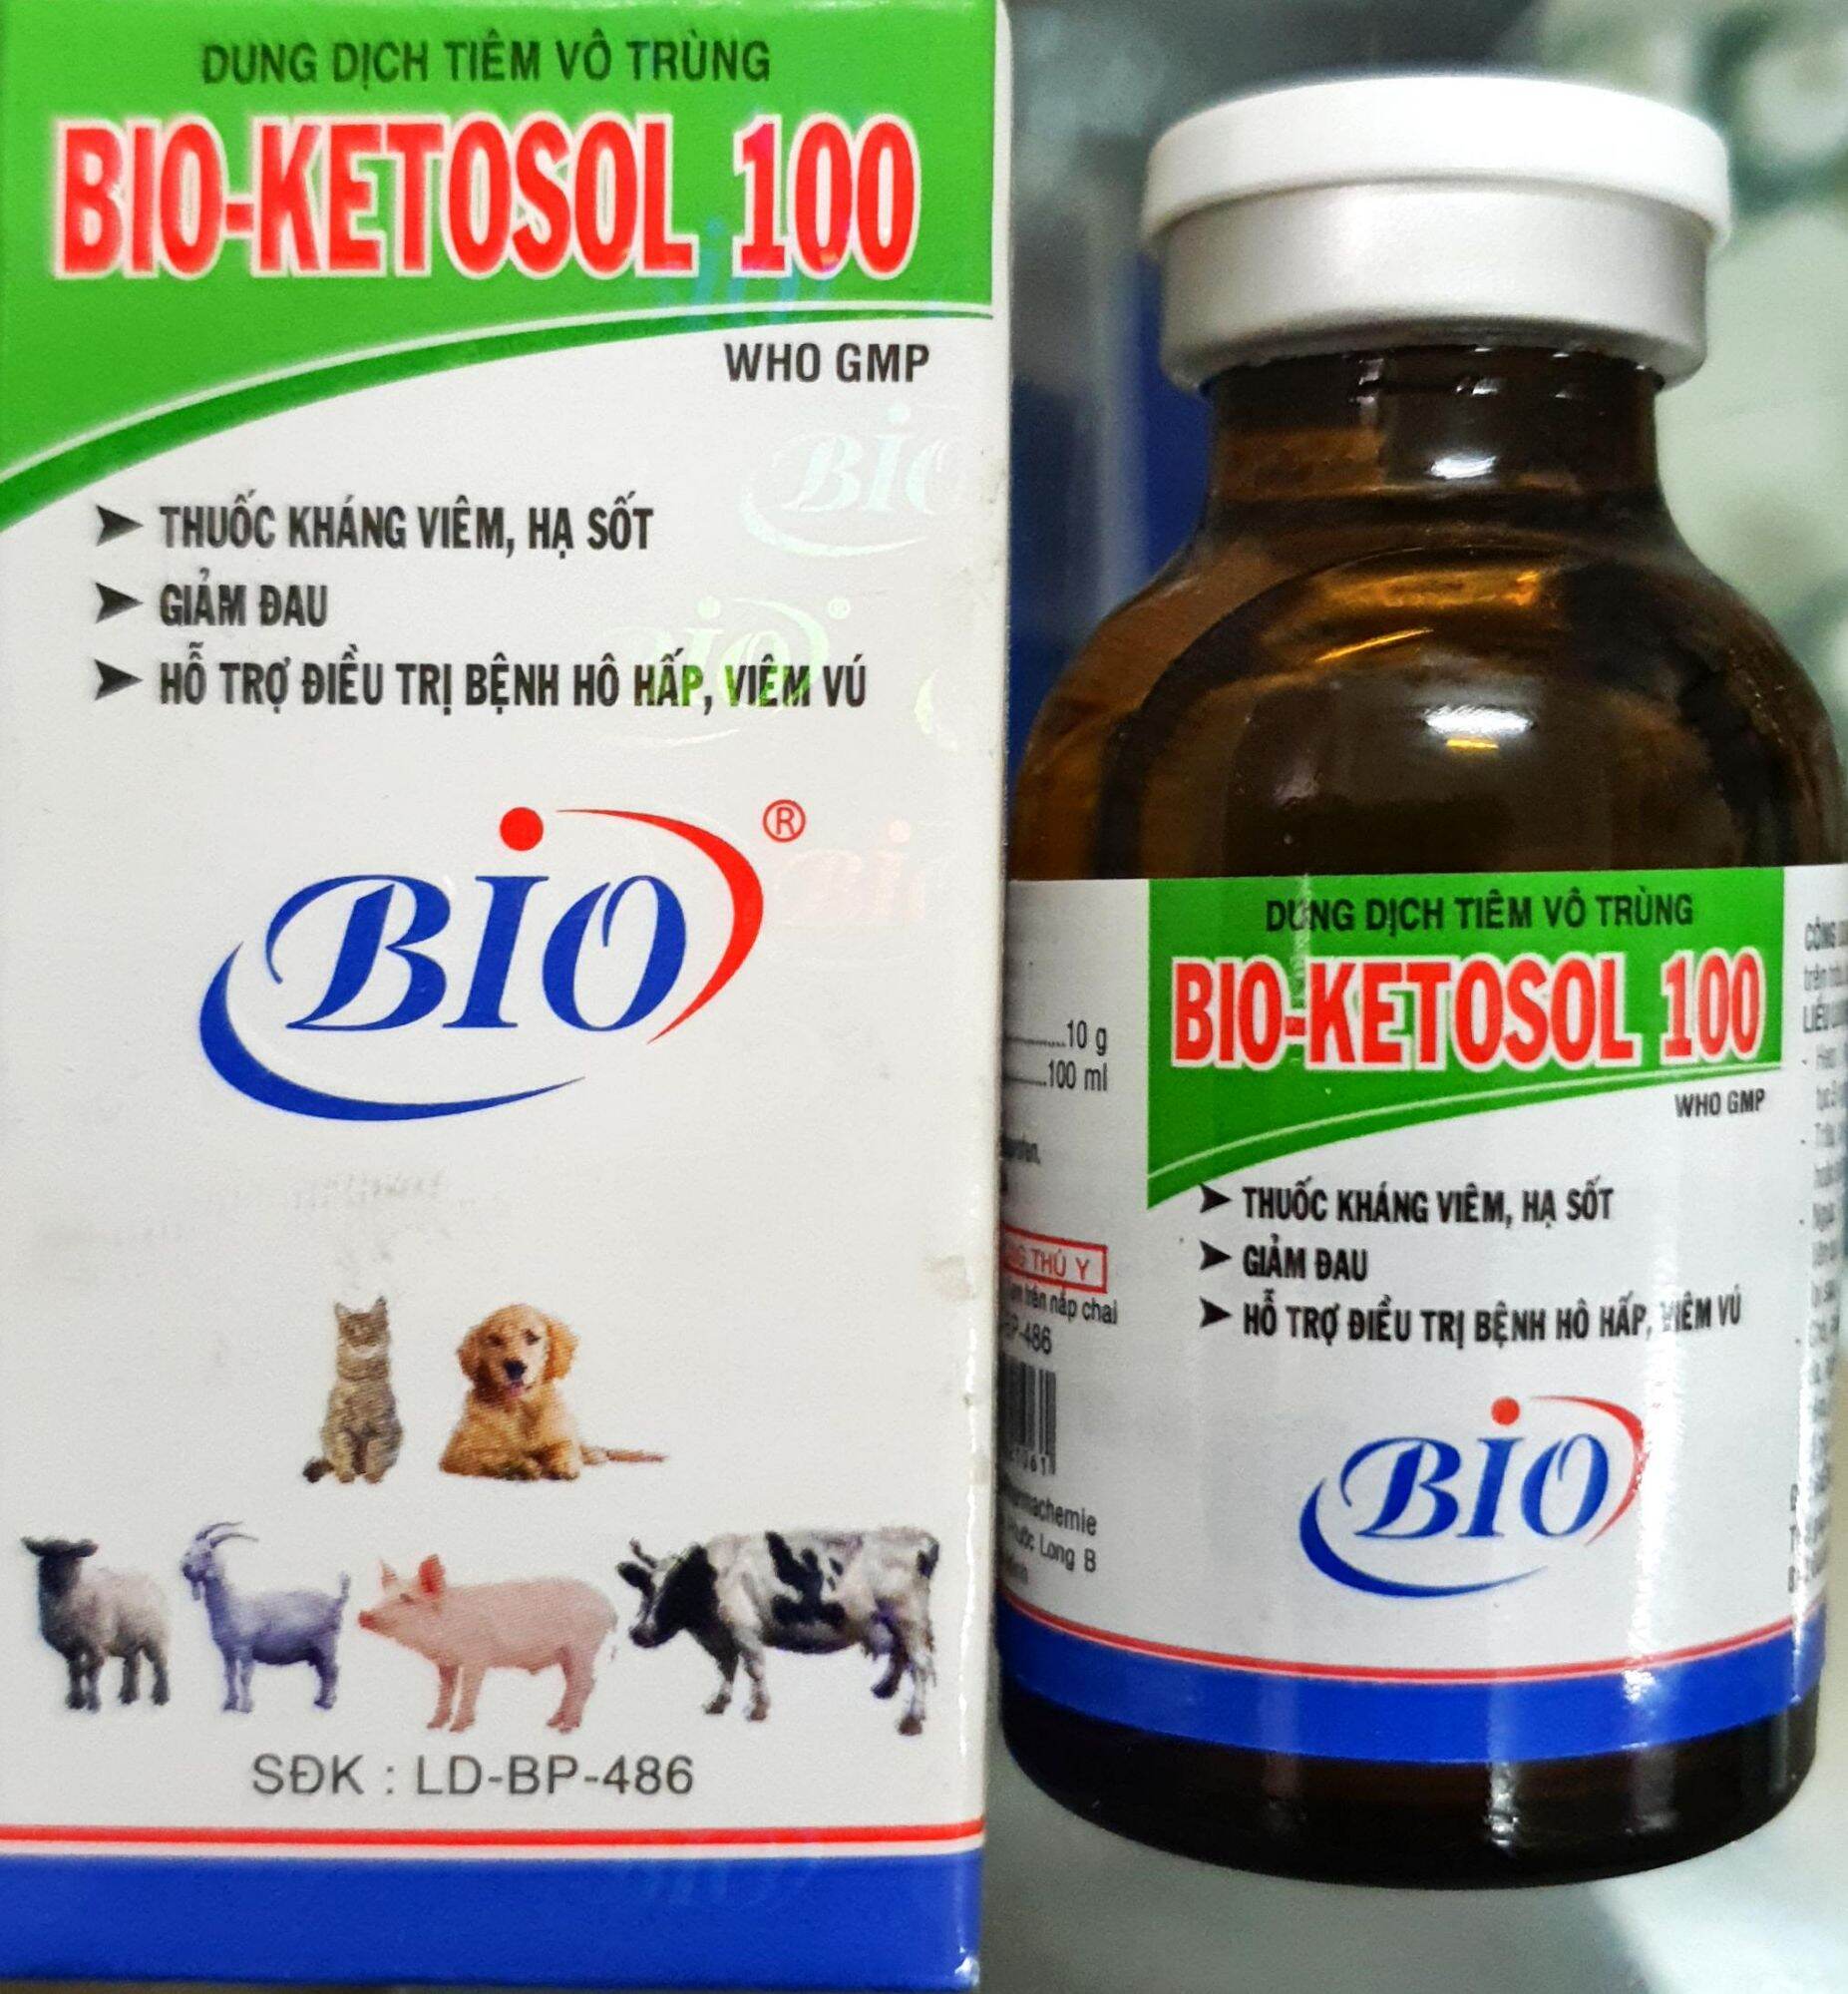 Bio Ketosol 100 (20ml) - Ketoprofen 10% giảm đau, hạ sốt, giảm phù nề, chống viêm cho gà đá, thú cưng